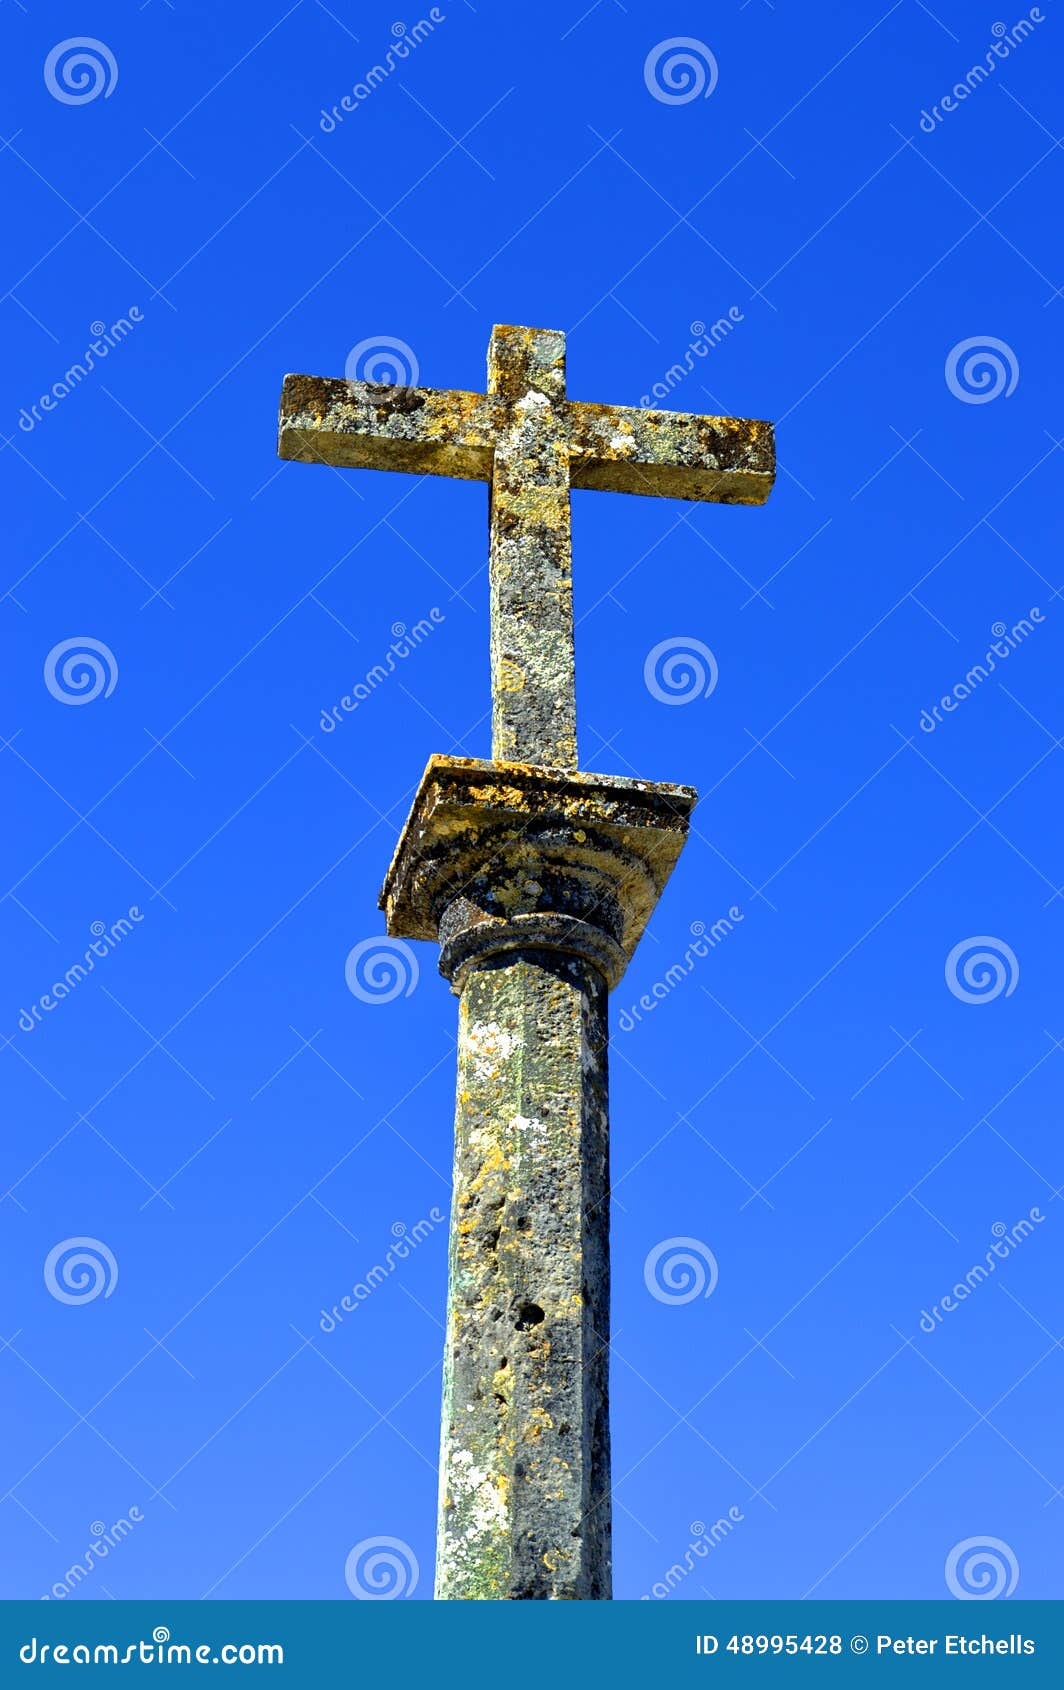 a cross outside the parish church in salir